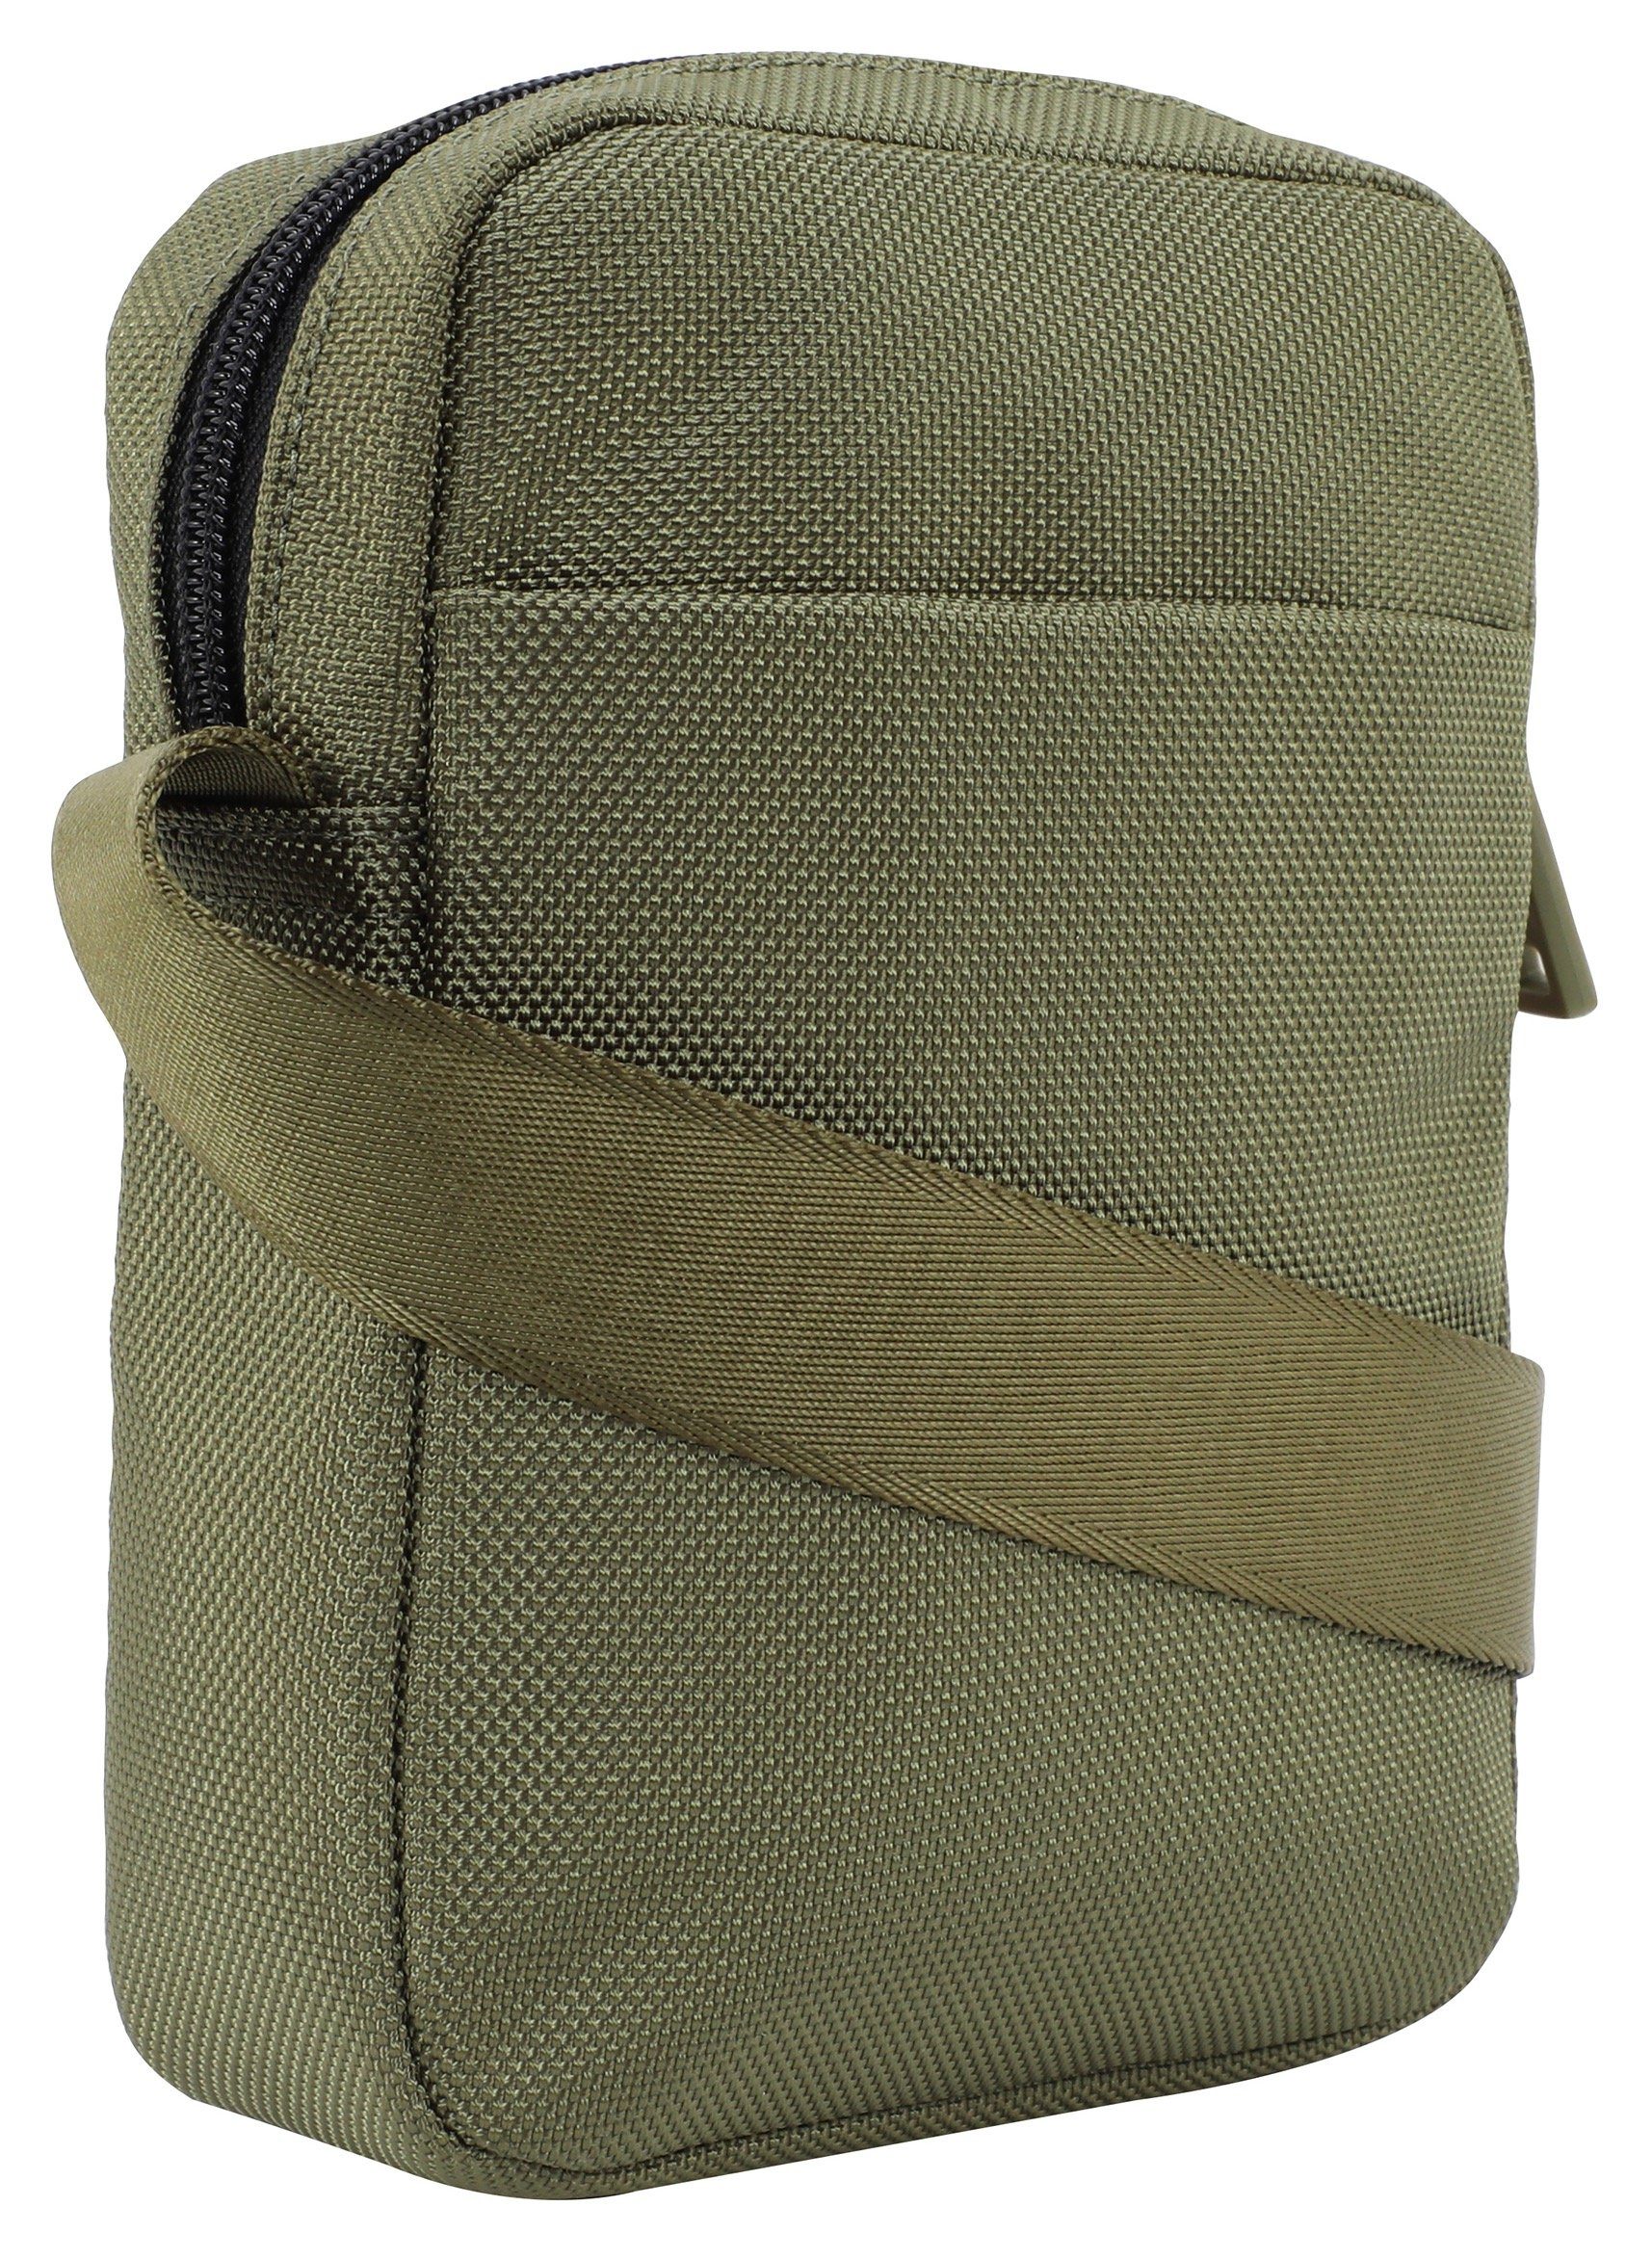 Umhängetasche Joop shoulderbag xsvz, im praktischen Design modica Jeans dunkelgrün rafael